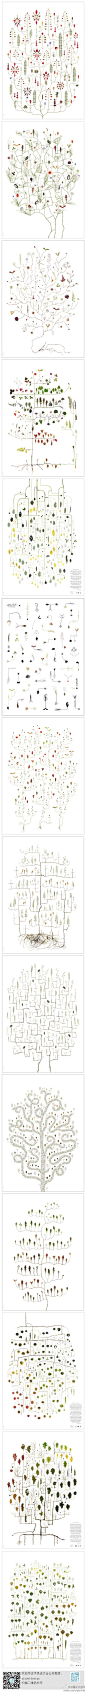 求是设计会网#求是爱插画#树的解析。瑞典艺术家Lotta Olsson绘制的“树”谱，生动地讲述了不同植物在不同生长时期和状态时叶子的状态，非常清新有趣！